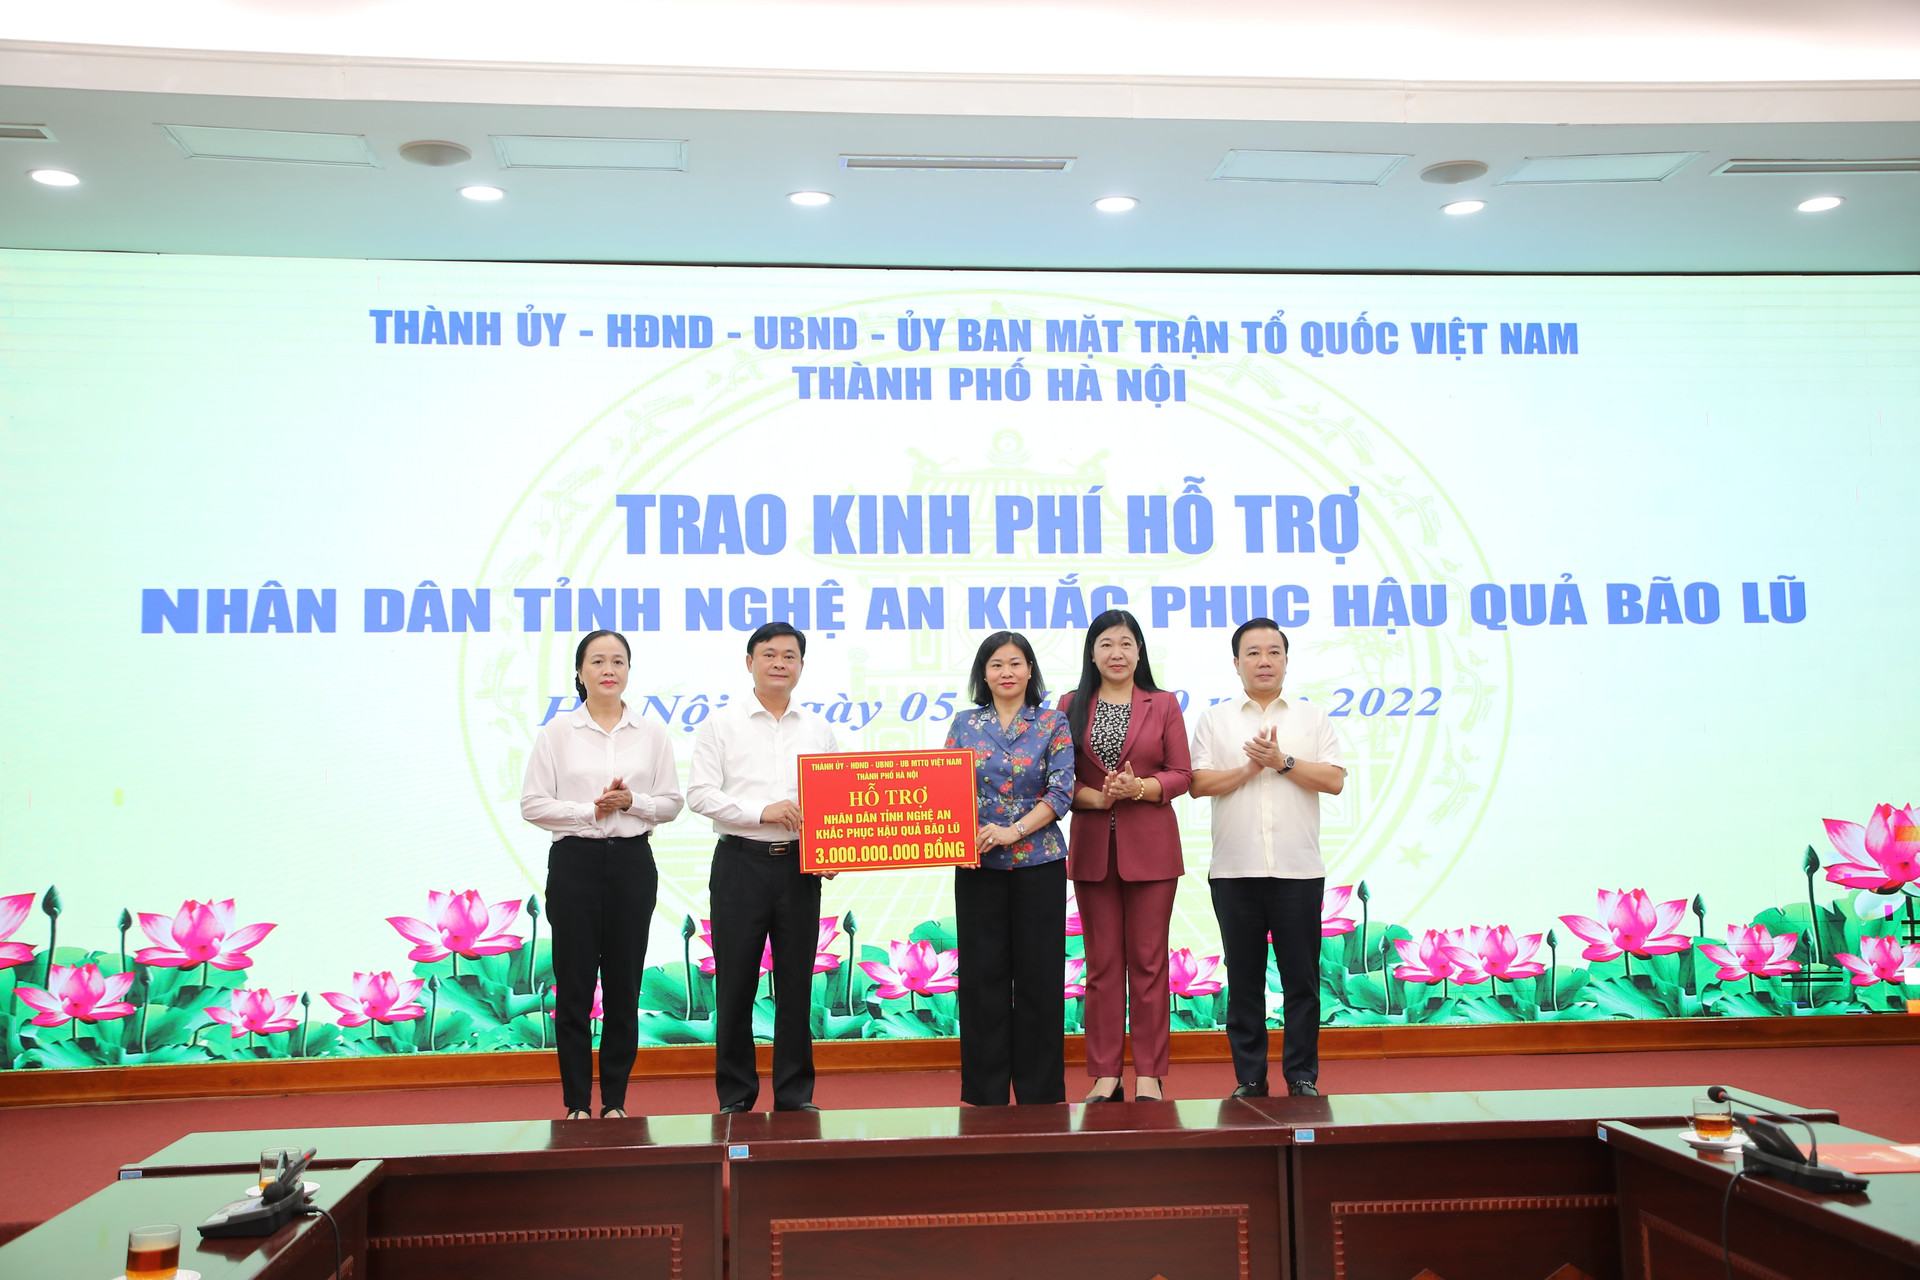 Lãnh đạo Thành phố Hà Nội trao kinh phí hỗ trợ nhân dân tỉnh Nghệ An khắc phục hậu quả bão lụt.